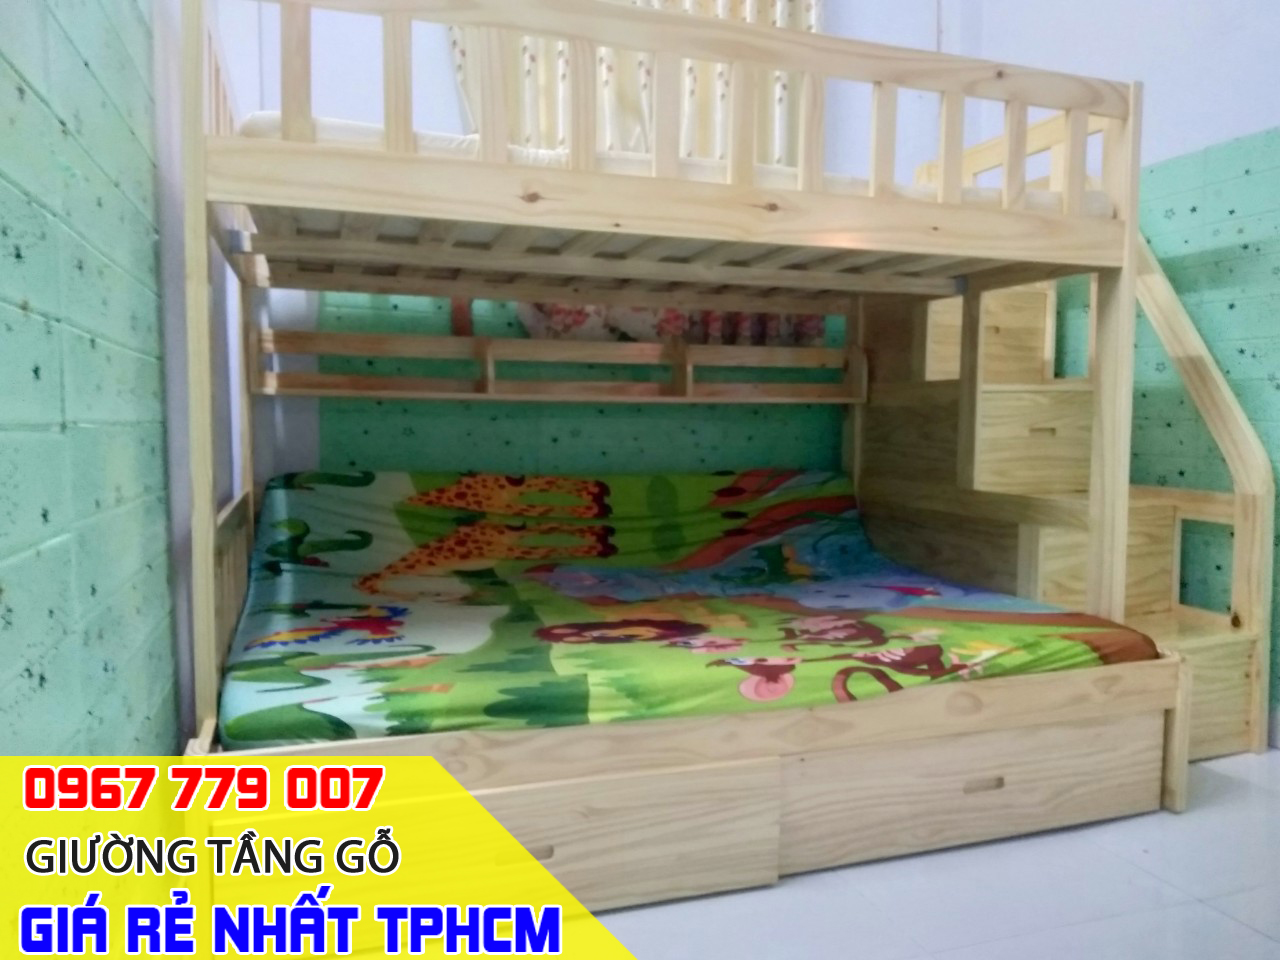 Tổng hợp các mẫu giường tầng trẻ em lắp ráp thực tế tại nhà khách hàng đã đặt mua TPHCM 05-2023 P1